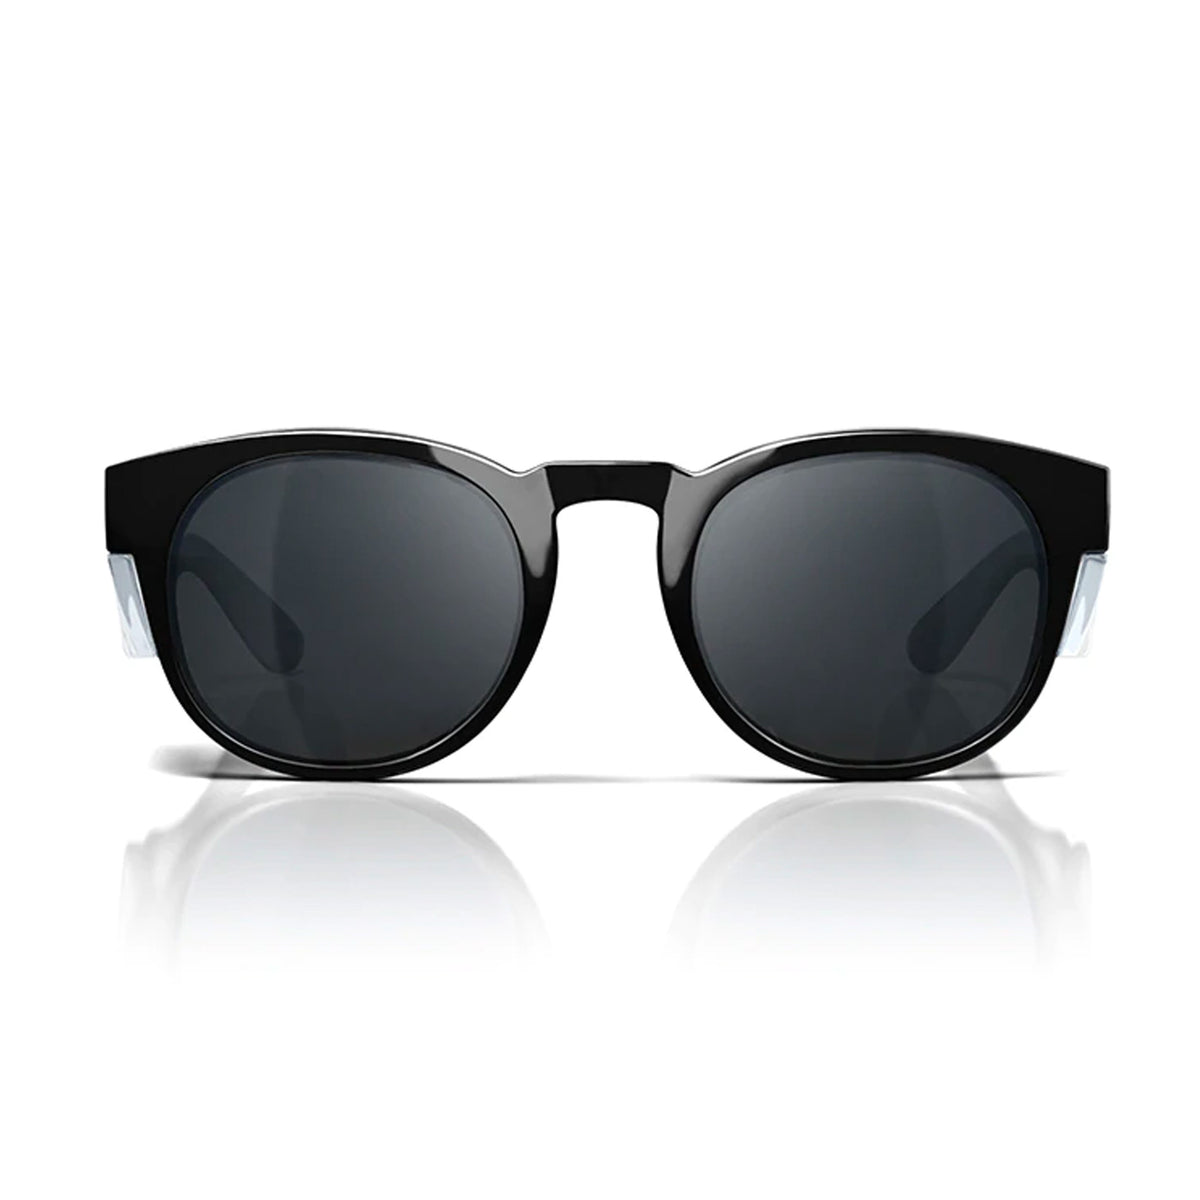 safestyle cruisers black frame polarised uv400 lens glasses